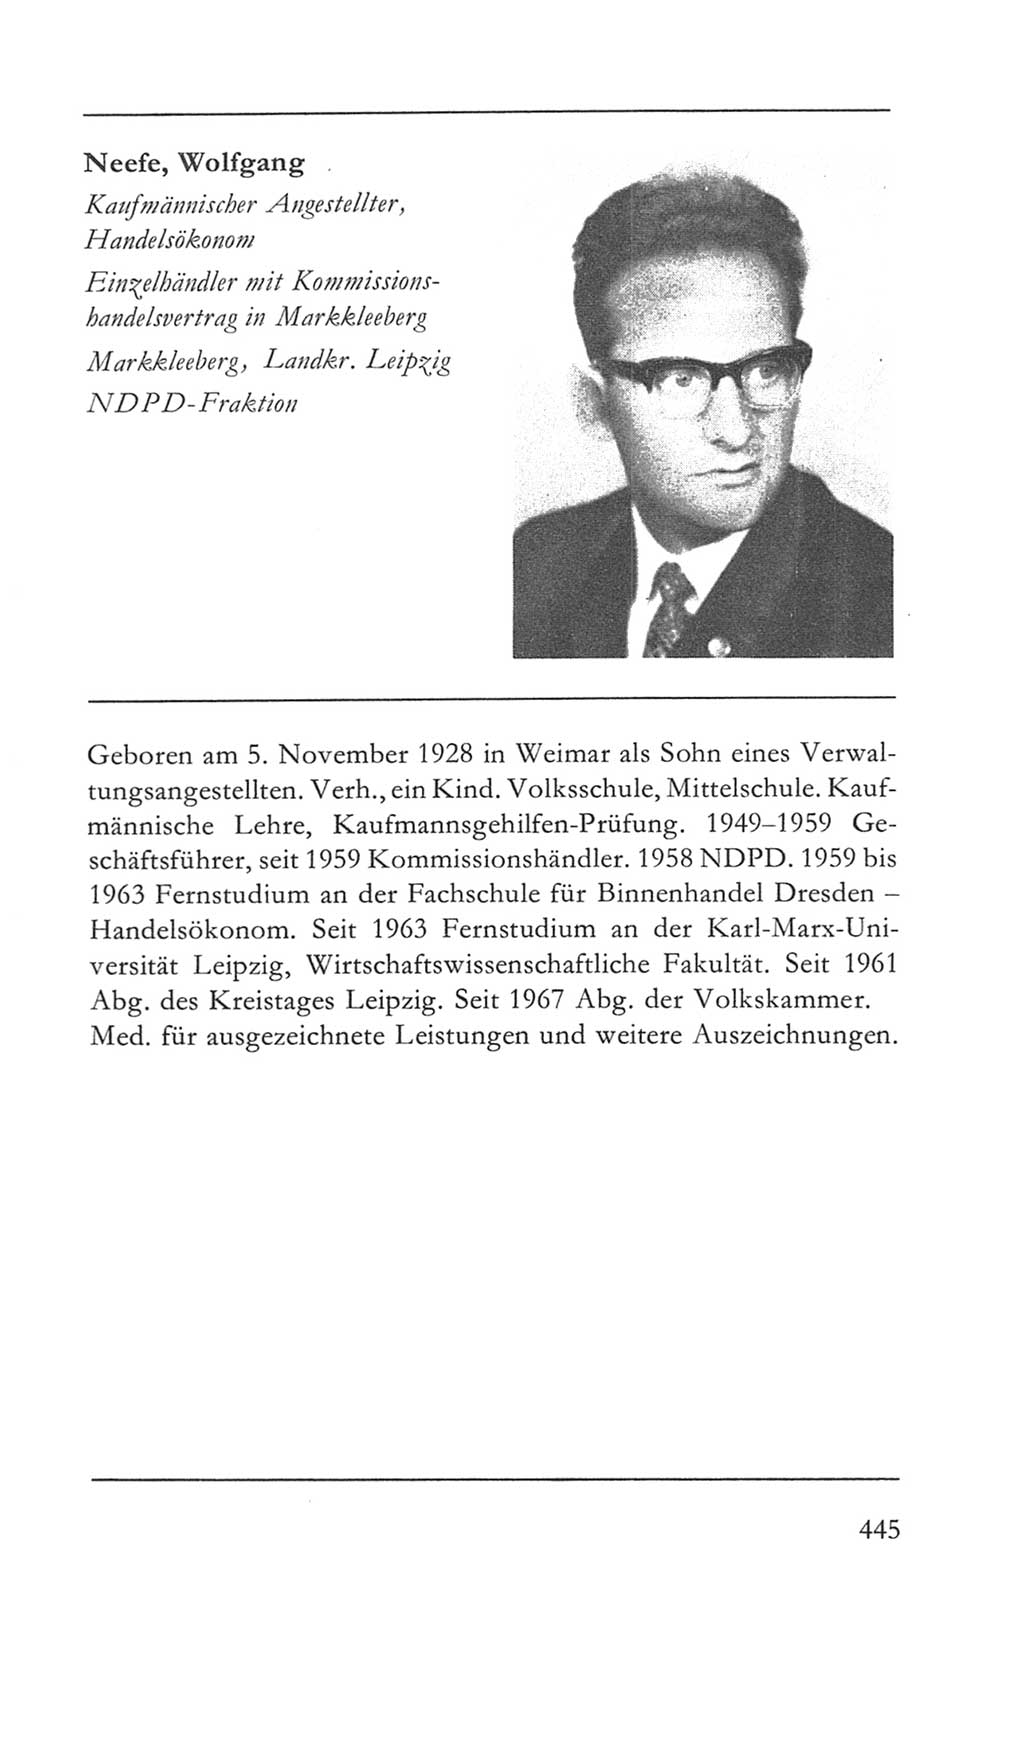 Volkskammer (VK) der Deutschen Demokratischen Republik (DDR) 5. Wahlperiode 1967-1971, Seite 445 (VK. DDR 5. WP. 1967-1971, S. 445)